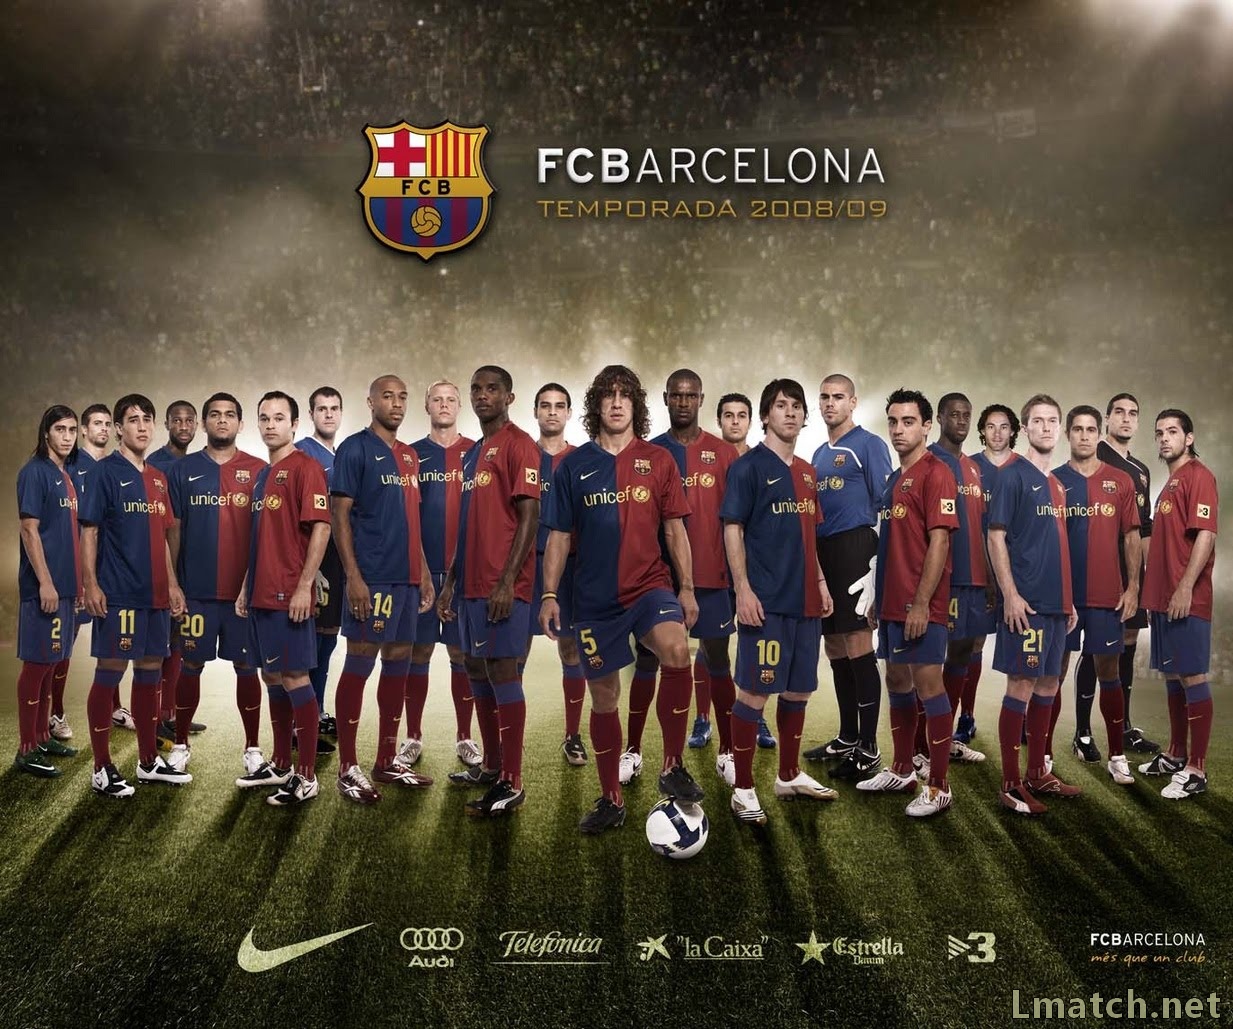 http://2.bp.blogspot.com/-2iCL3E0Ifik/UA9HJPuzwOI/AAAAAAAACdE/H1MPGQZdEuw/s1600/football-soccer-wallpaper_barcelona-team-squad_01_800x600.jpg